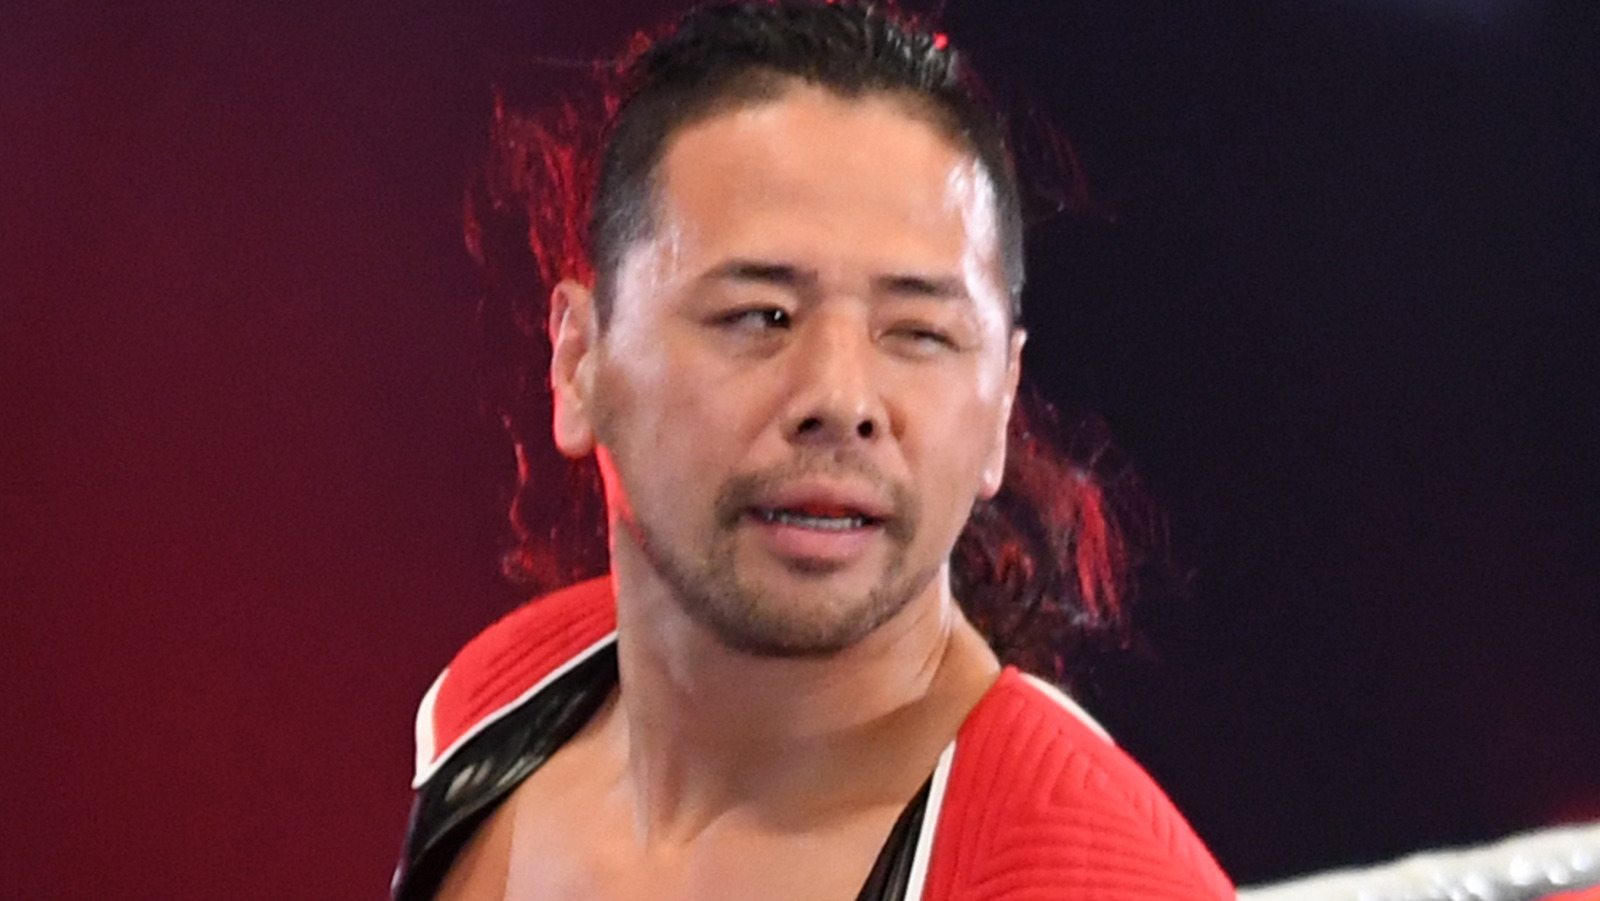 Shinsuke Nakamura Reveals When His Career Will End - WrestleTalk